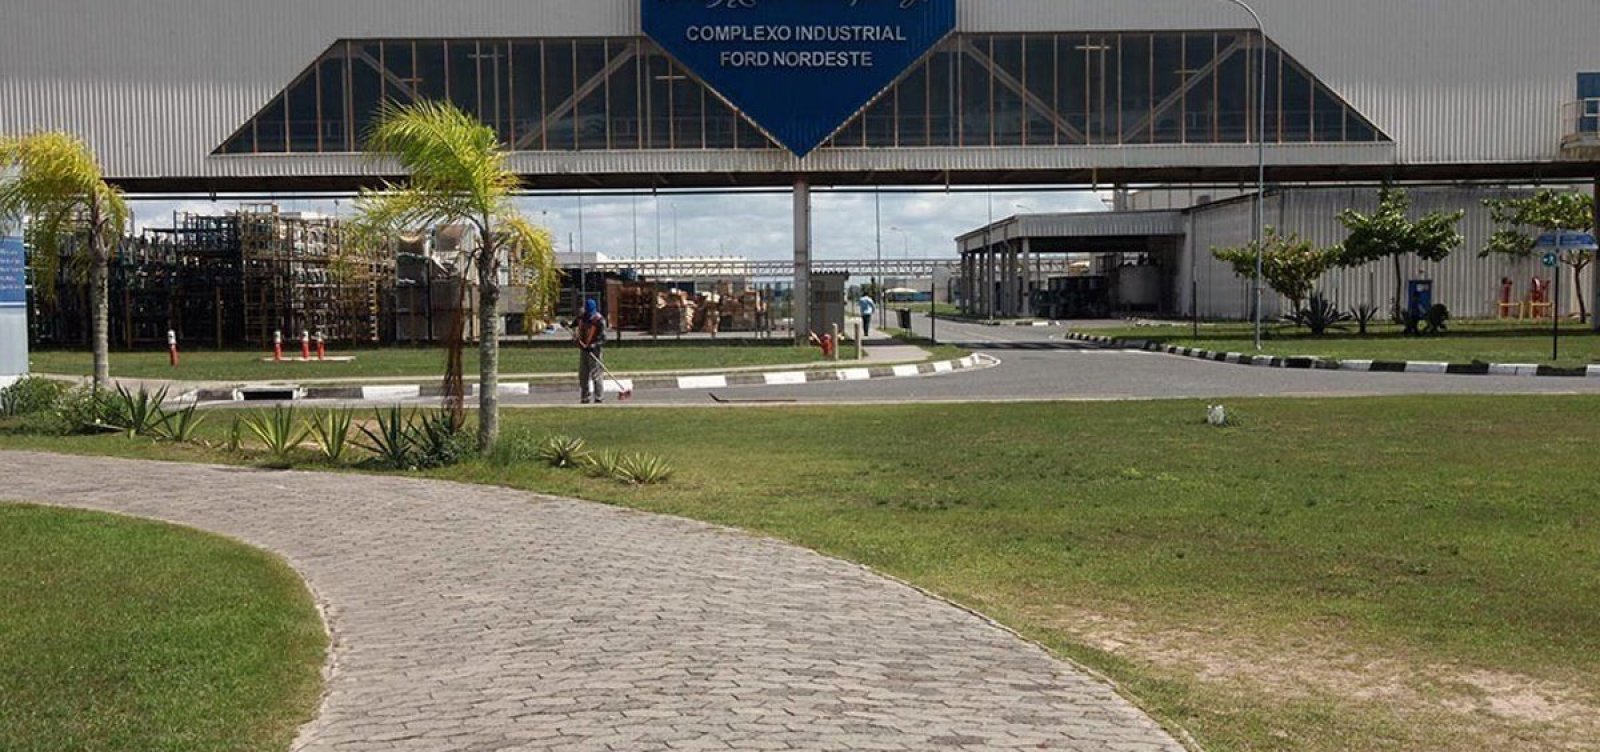 BYD anuncia R$ 5,5 bilhões na implantação de fábrica na Bahia, quase o dobro do previsto inicialmente